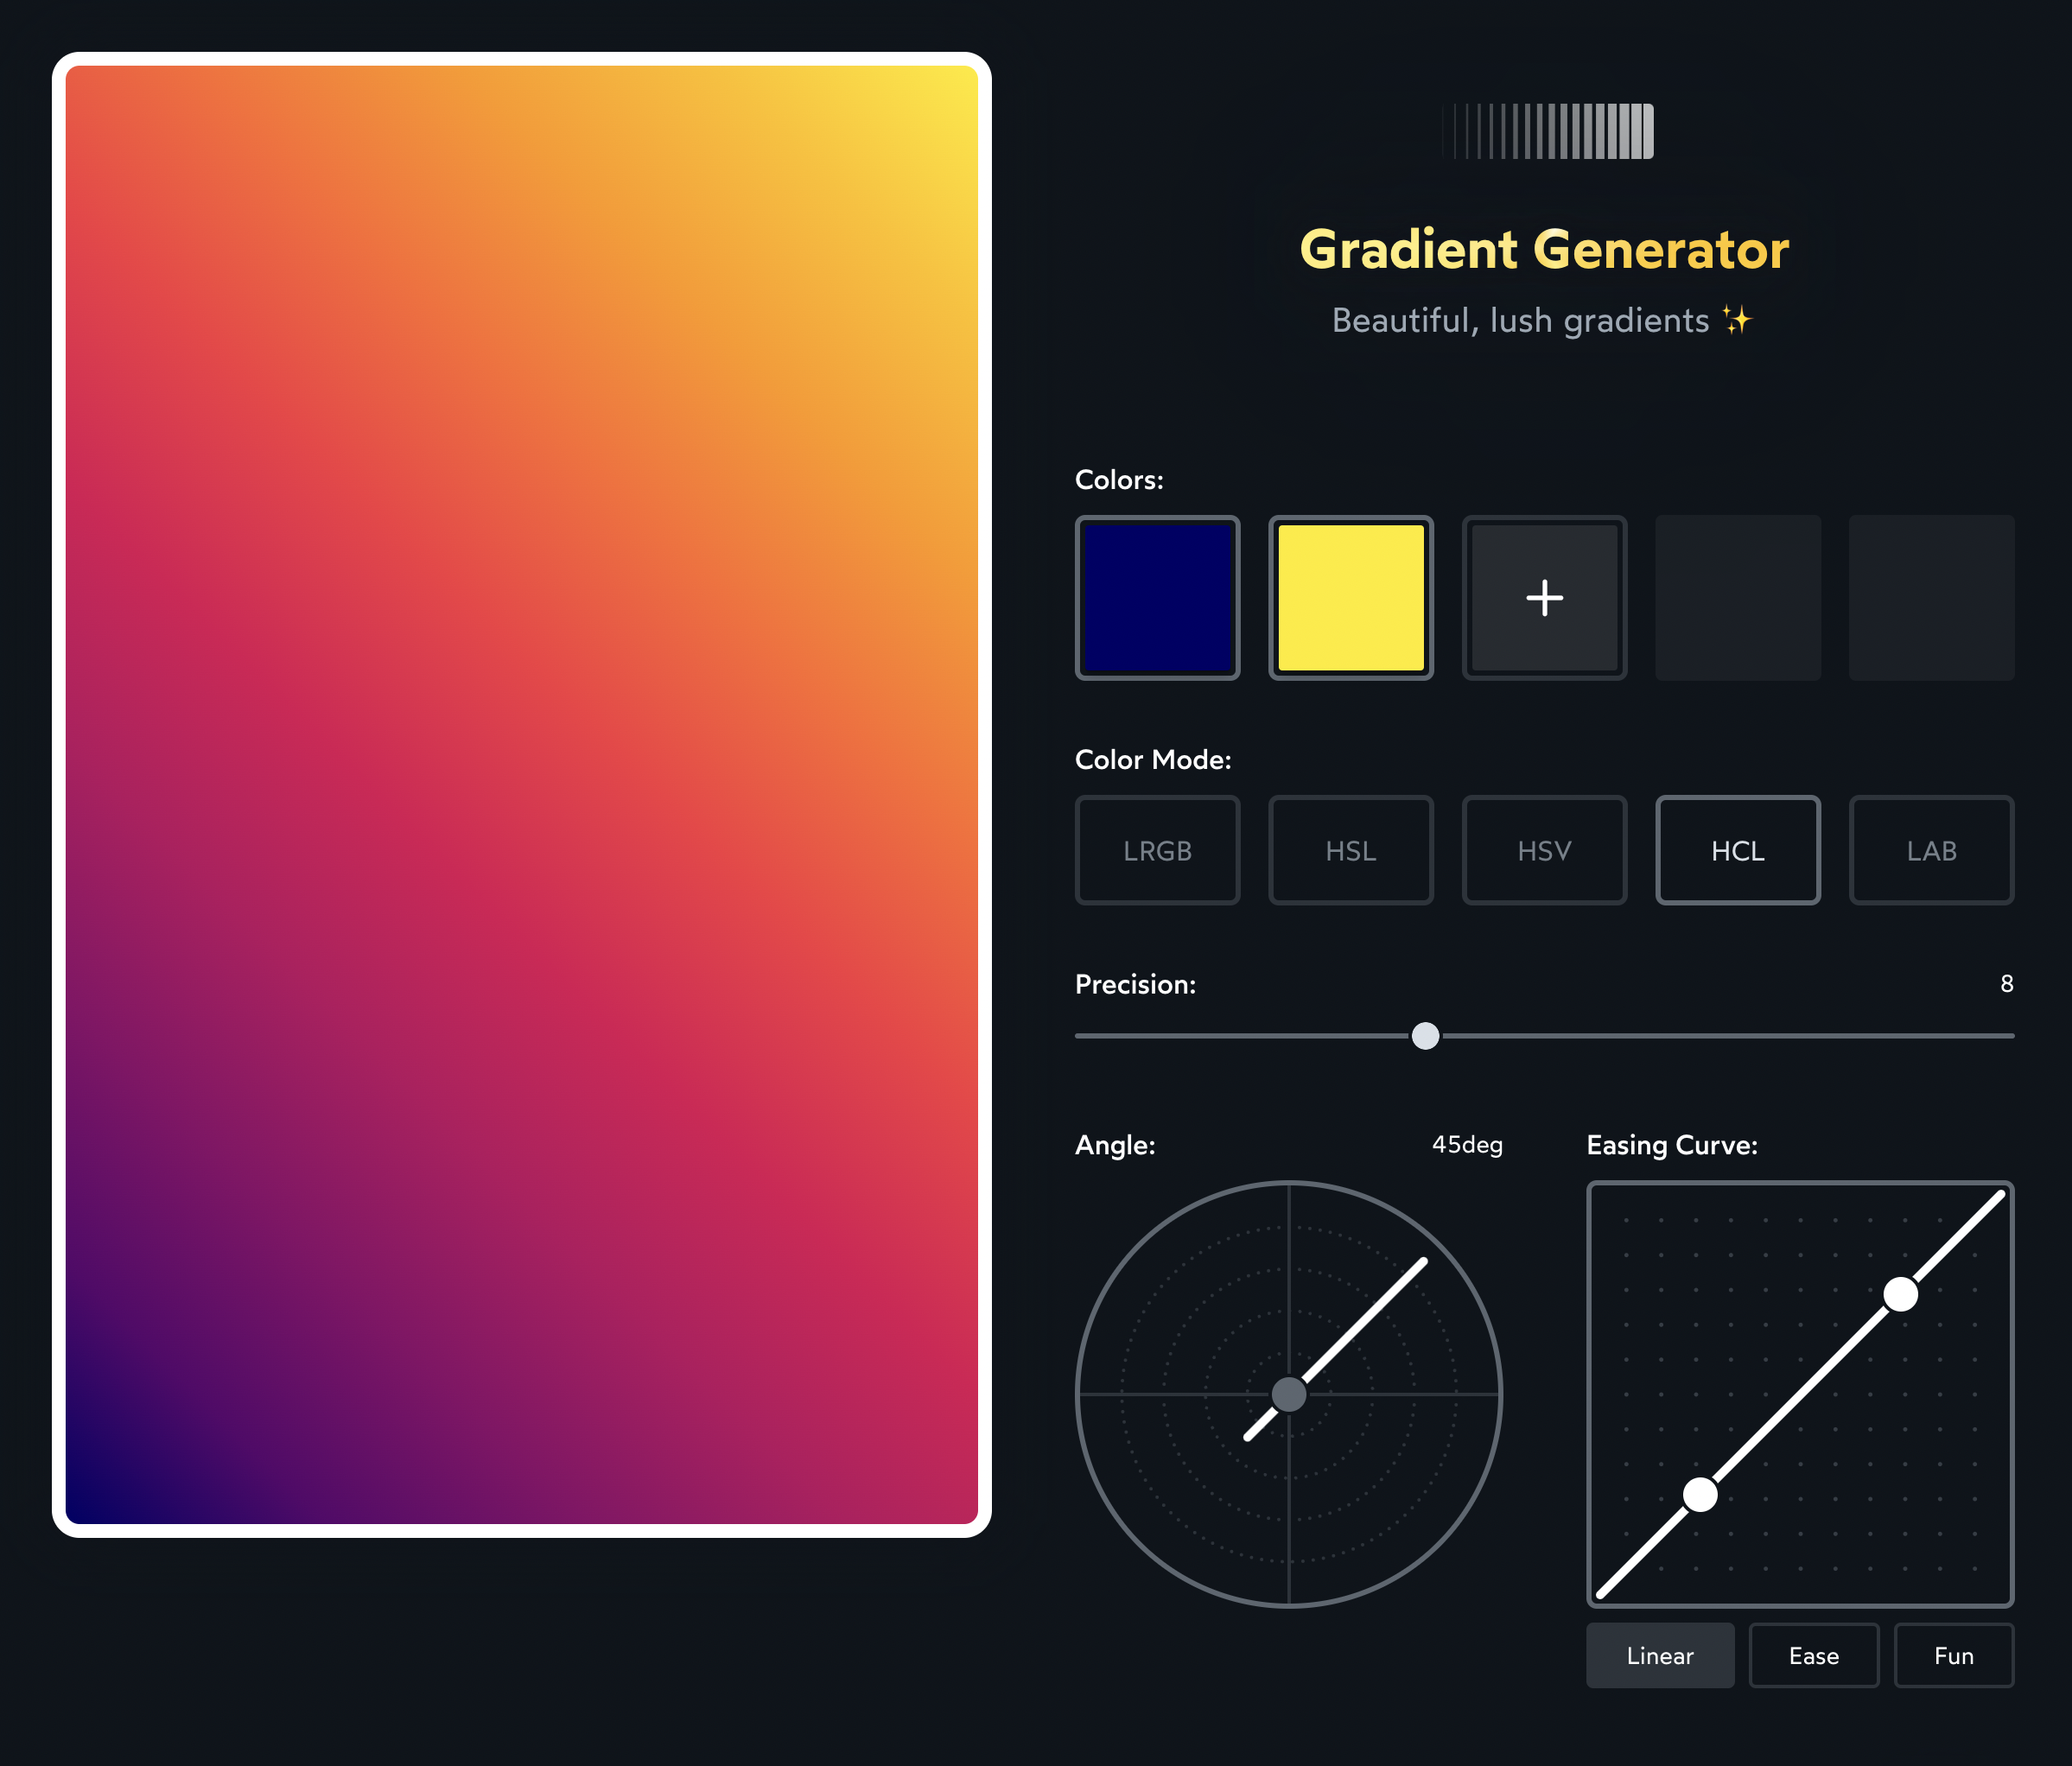 Điều chỉnh Gradient CSS: Hãy xem hình ảnh liên quan để khám phá cách điều chỉnh màu sắc gradient của bạn bằng CSS. Với những bước đơn giản và dễ hiểu, bạn sẽ có thể tạo ra những màu sắc gradient độc đáo và ấn tượng cho trang web của mình.